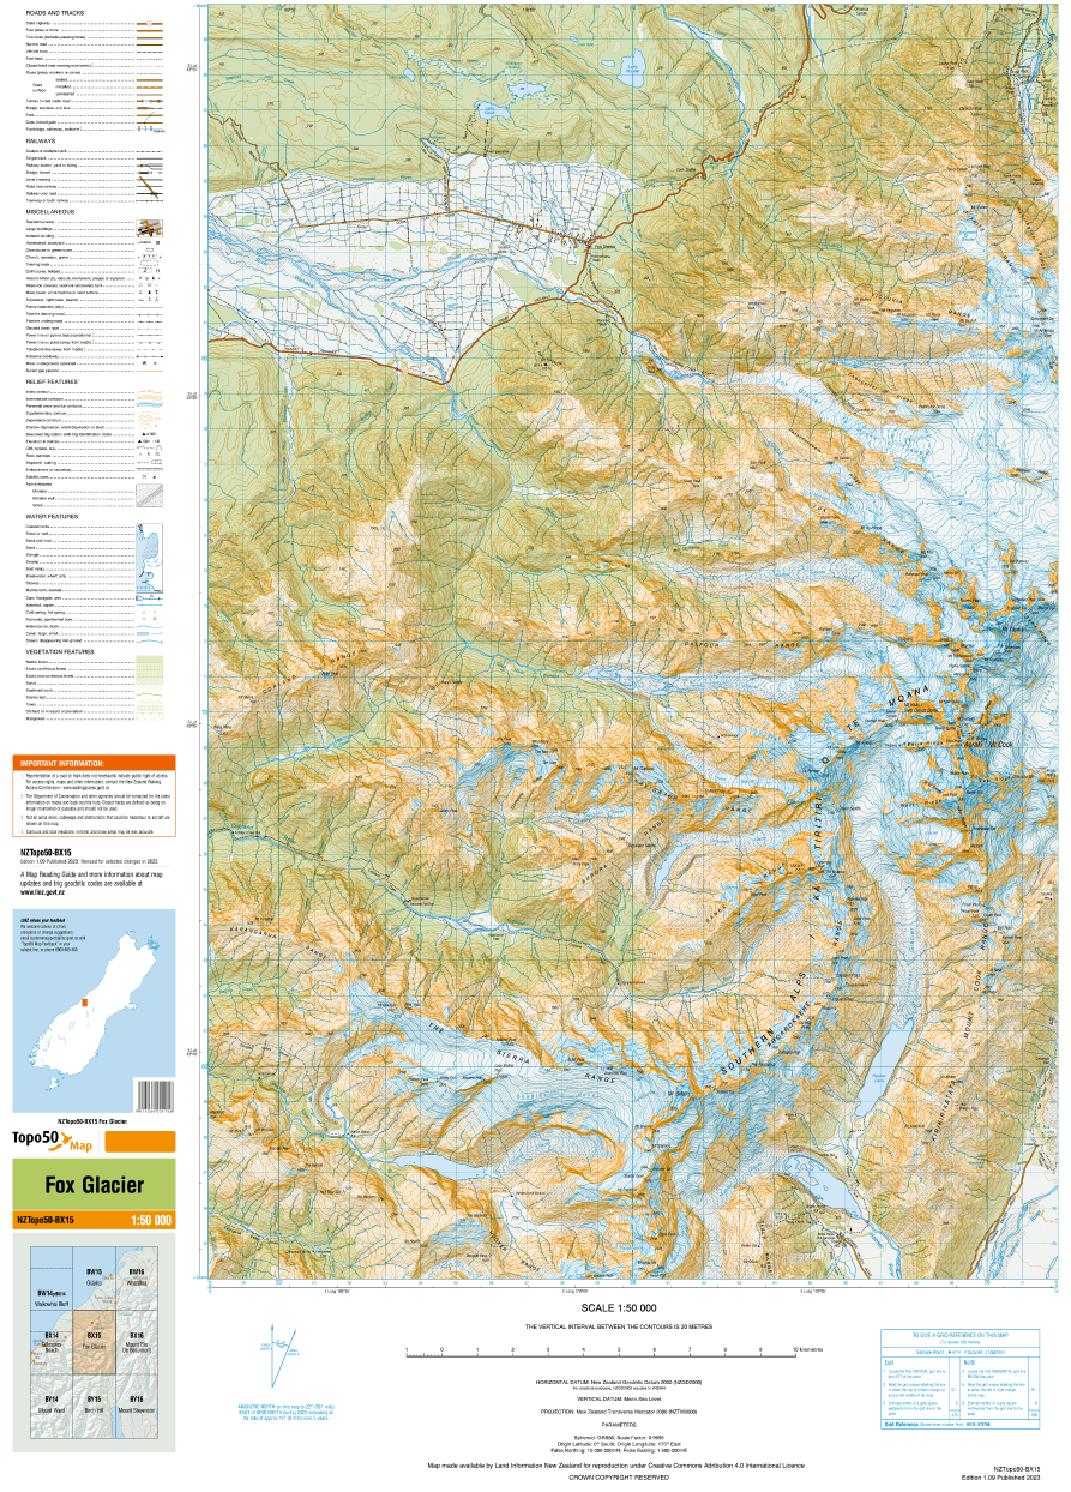 Topo map of Fox Glacier